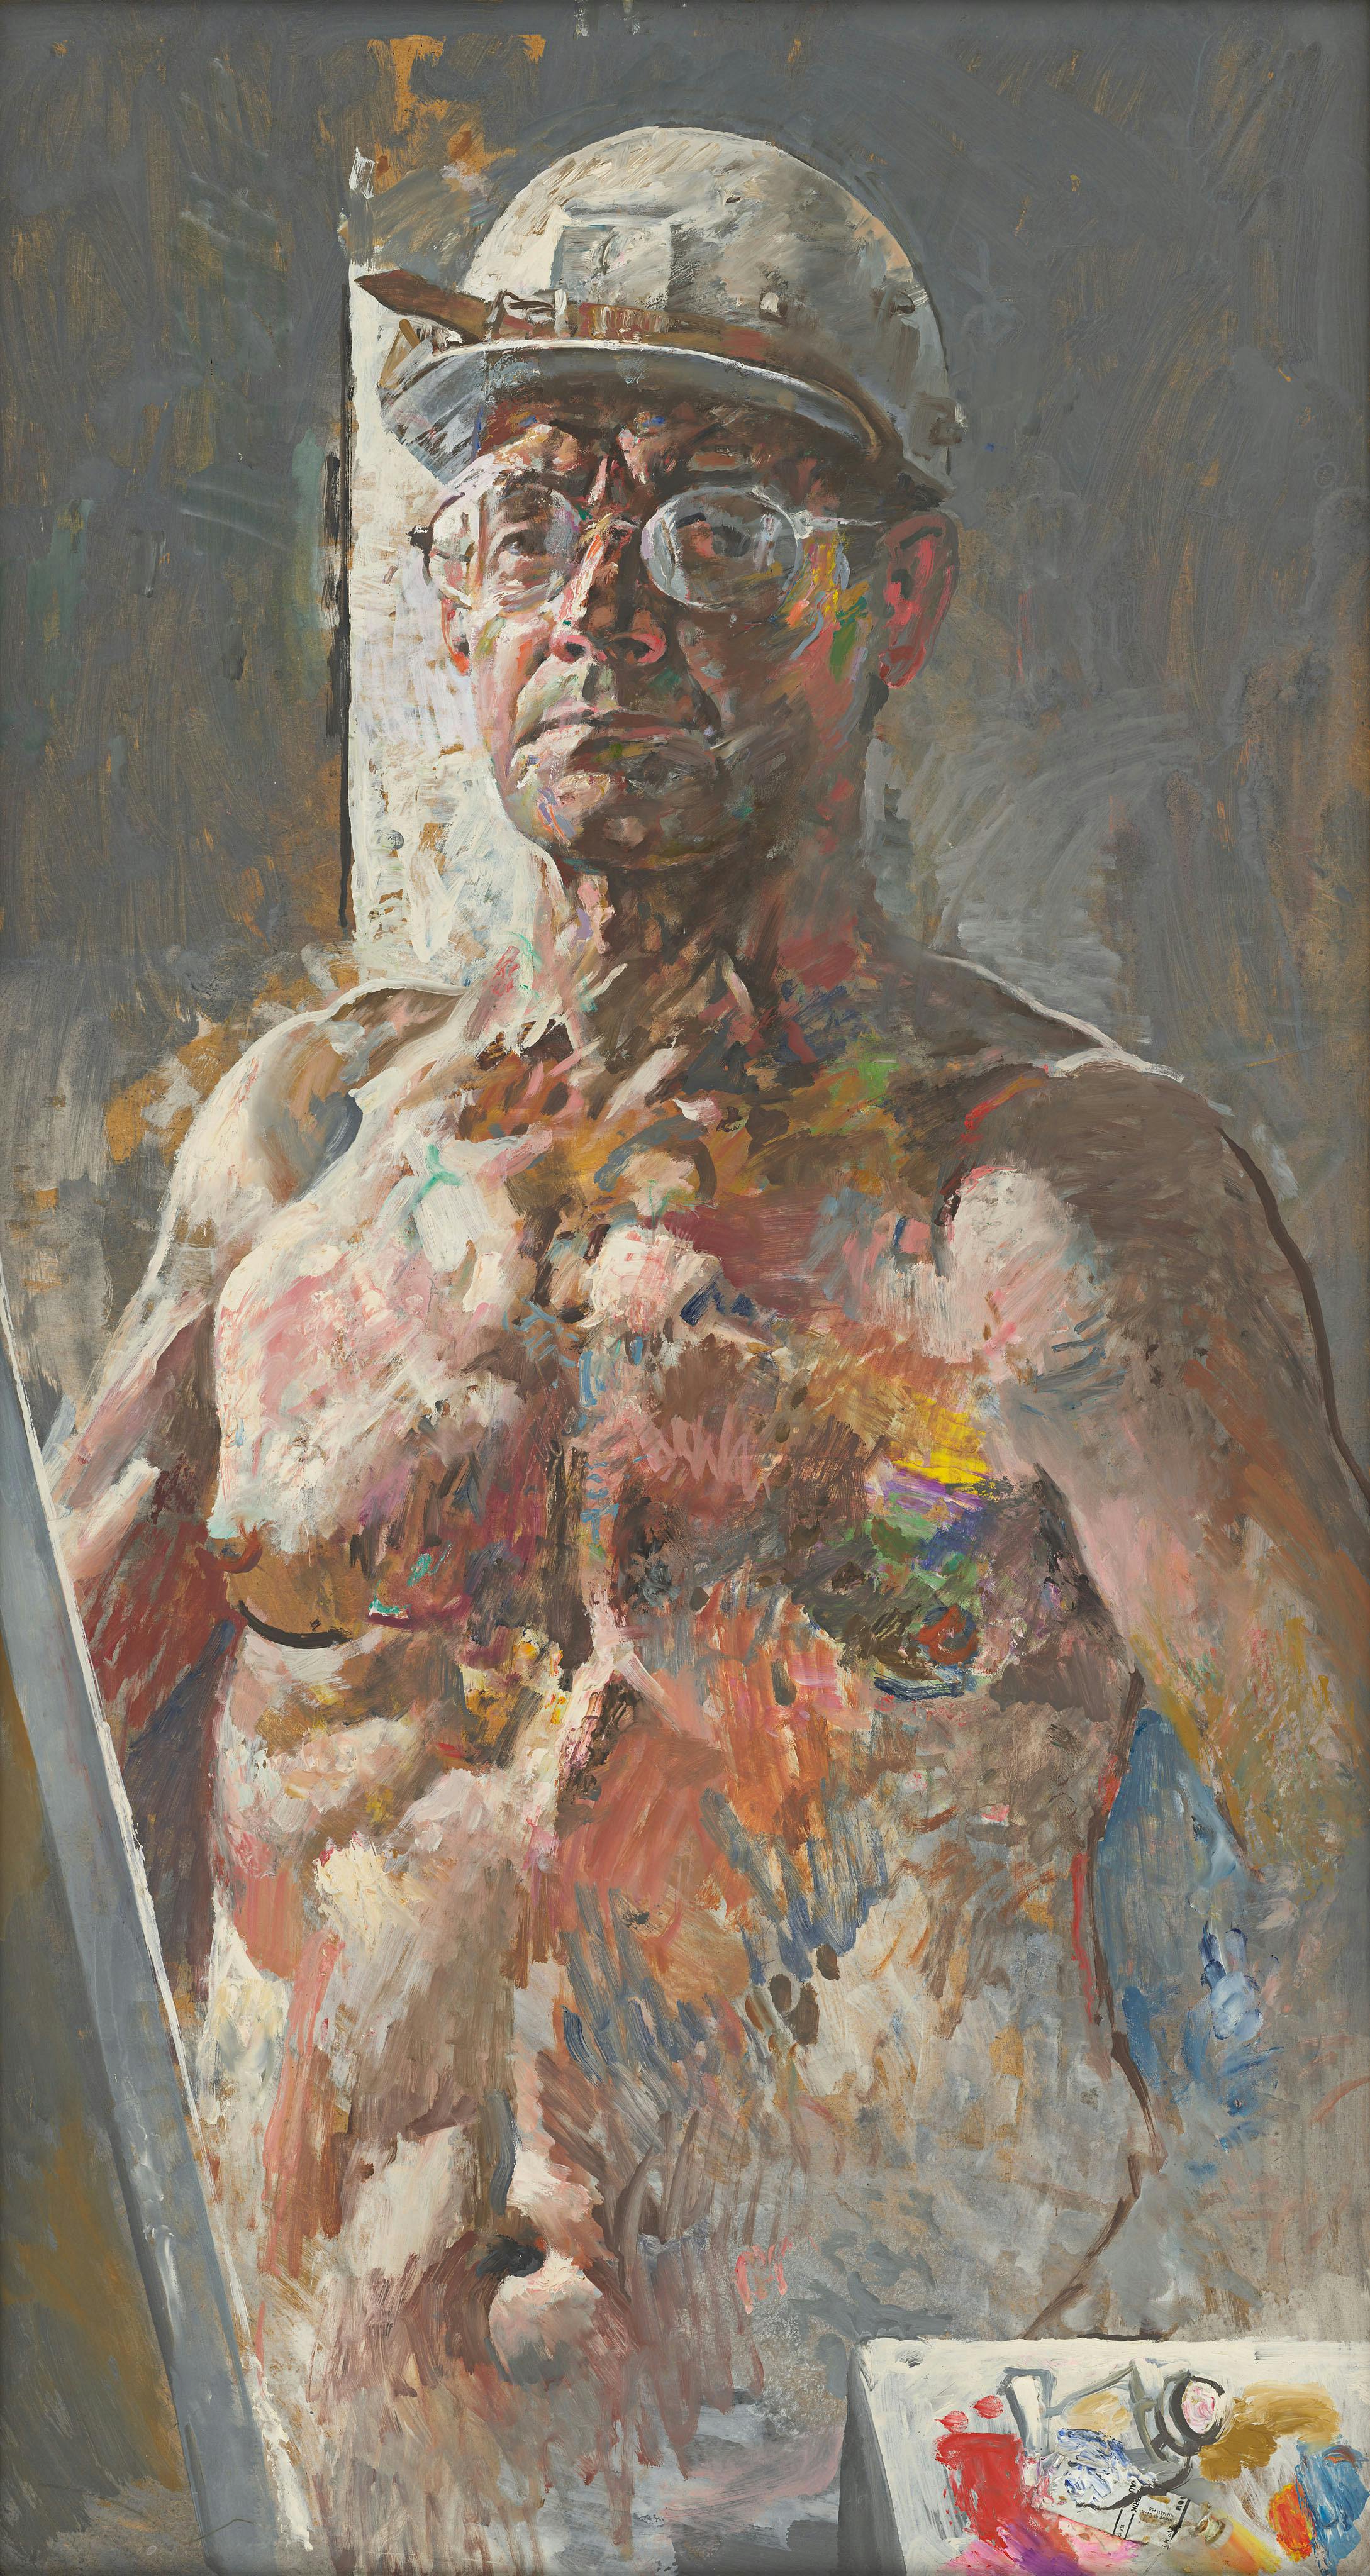 Gemälde: mit lockeren Pinselstrichen ist ein unbekleideter Mann in Frontalansicht bis zur Hüfthöhe dargestellt. Er trägt einen Bauarbeiterhelm und hält eine Farbtube in der Hand.